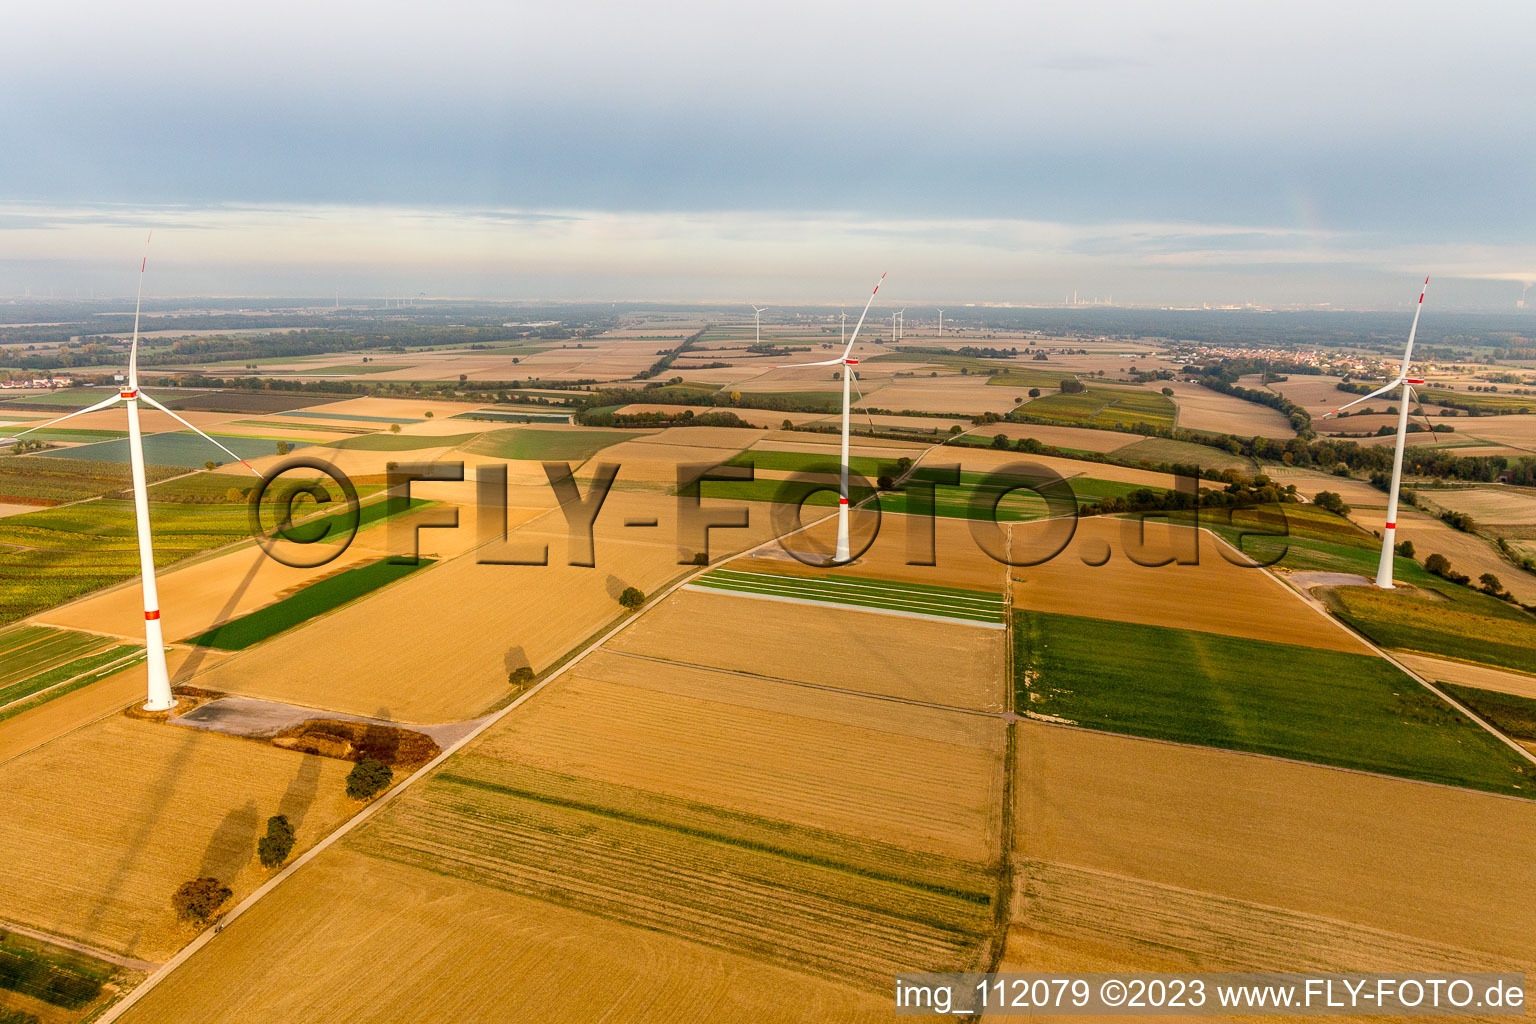 Parc éolien EnBW - éolienne avec 6 éoliennes à Freckenfeld dans le département Rhénanie-Palatinat, Allemagne du point de vue du drone